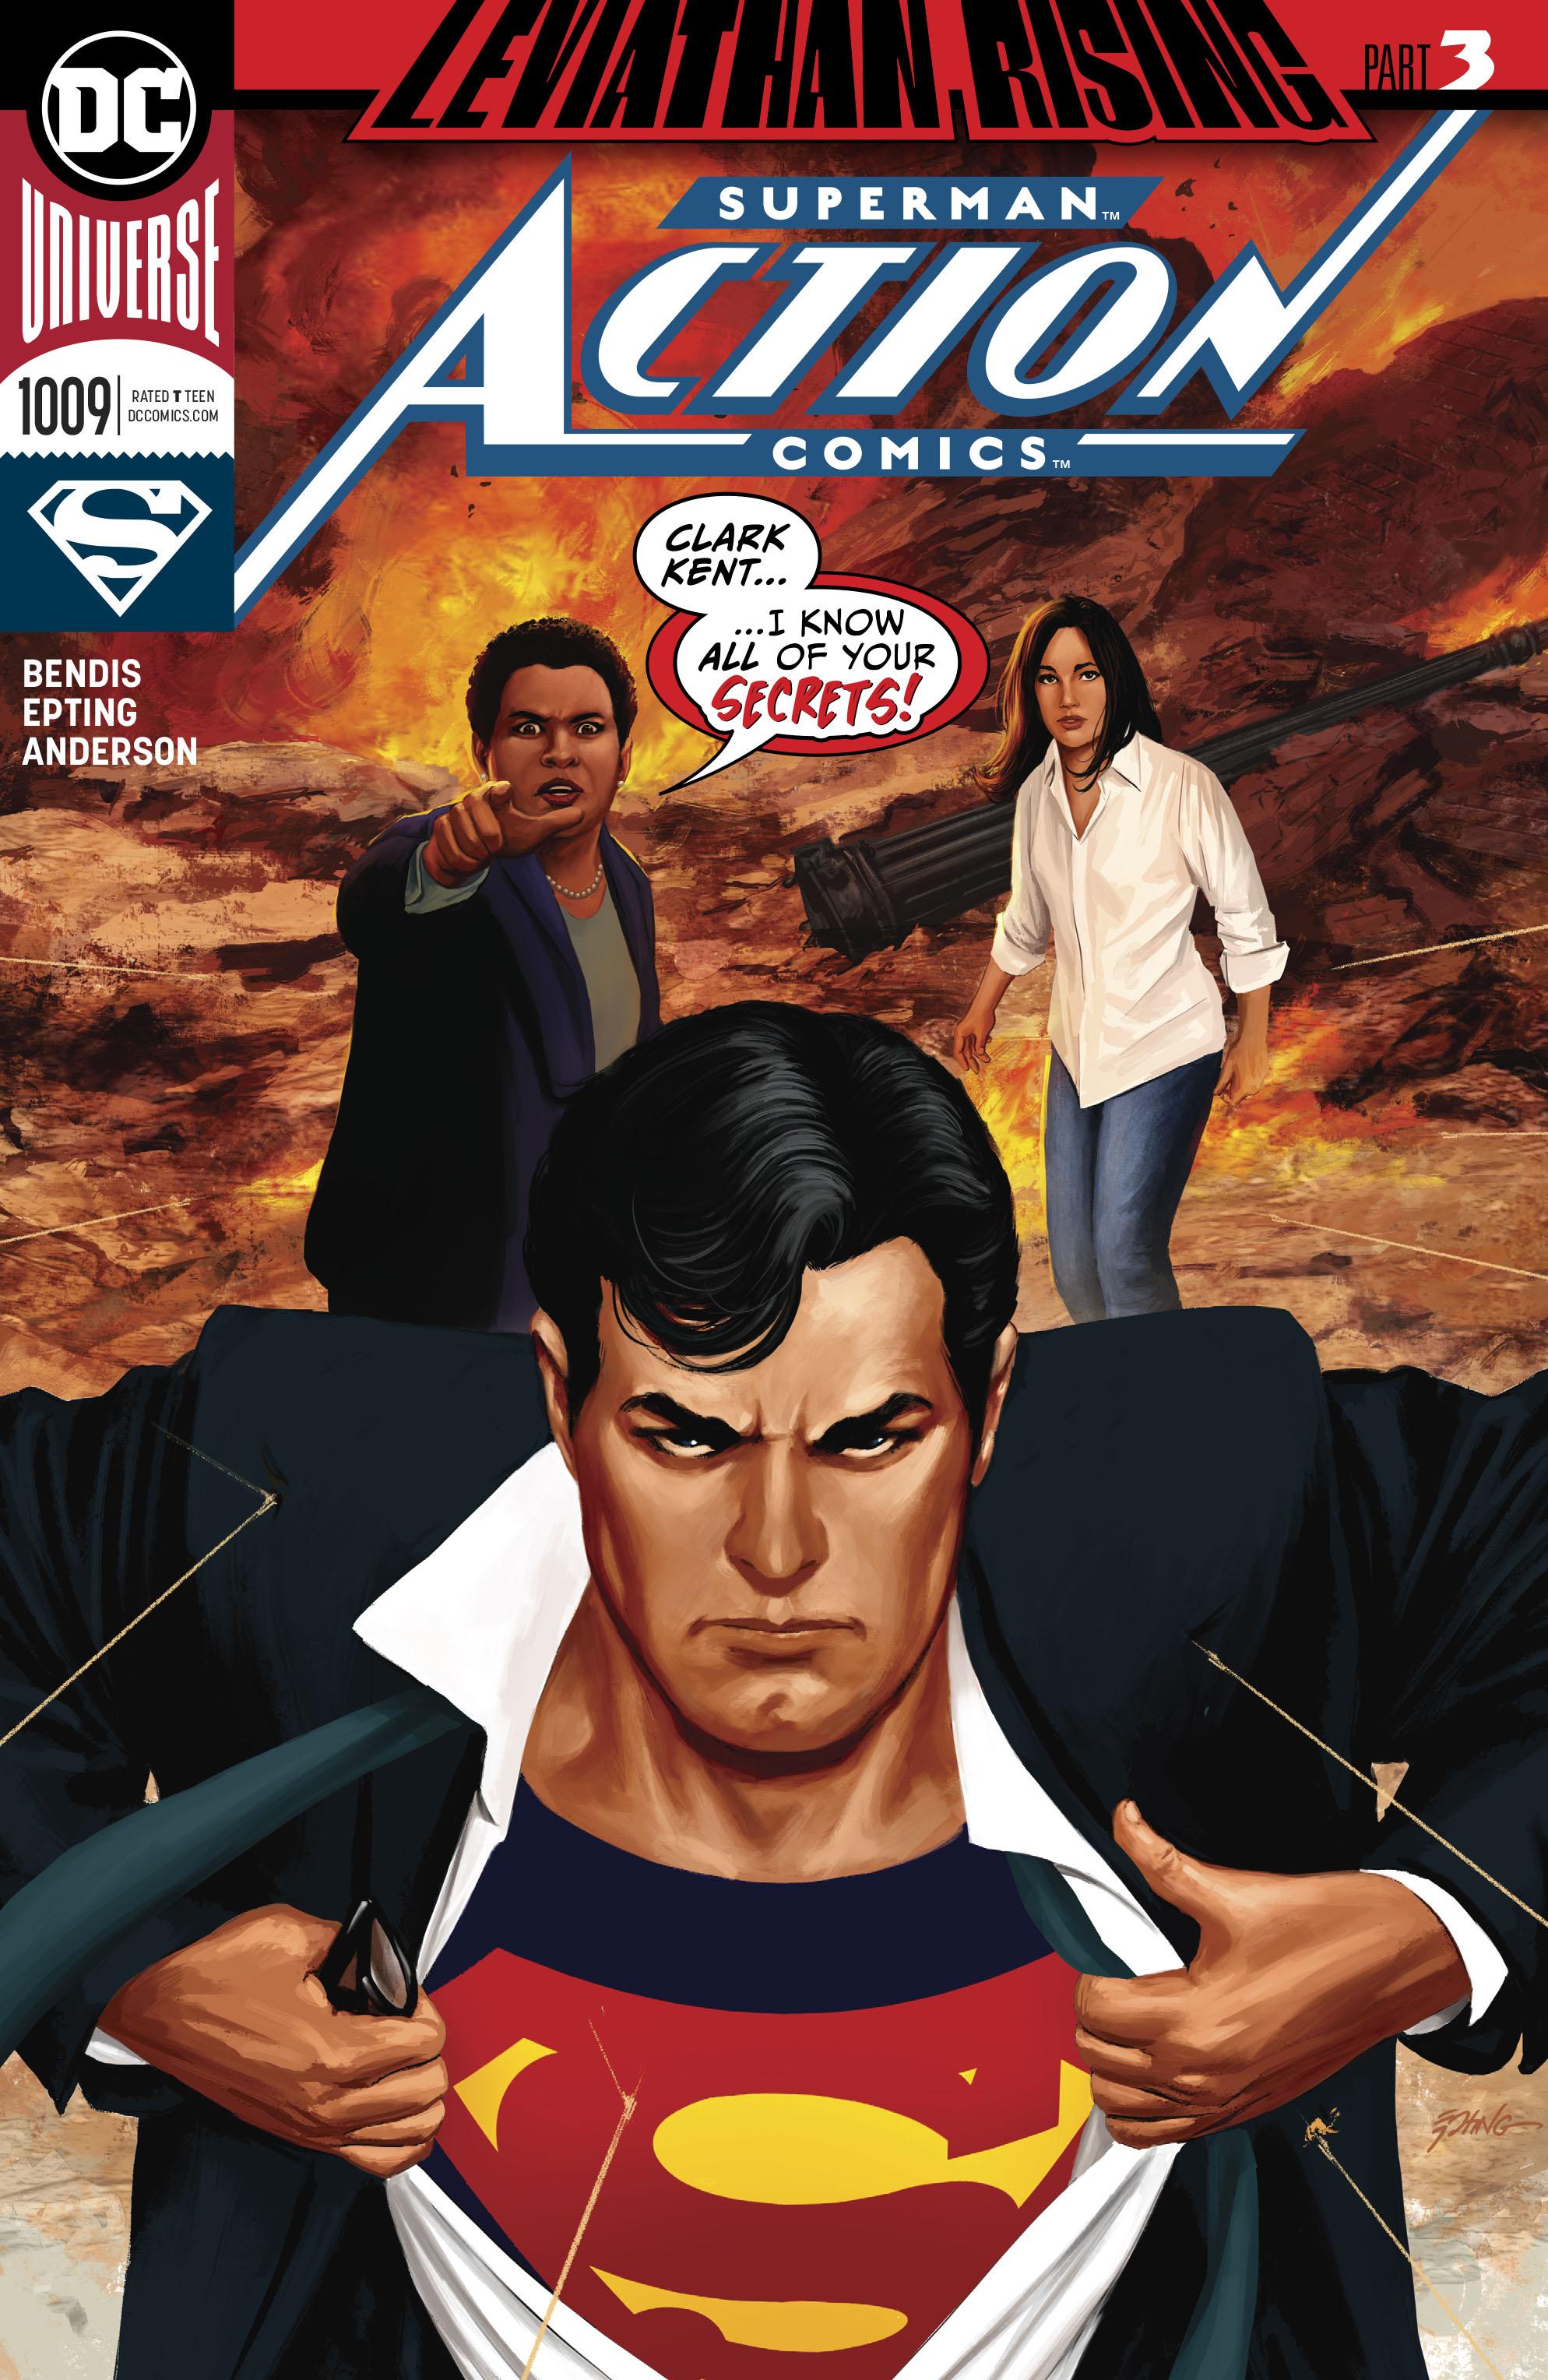 Action Comics Vol. 1 #1009